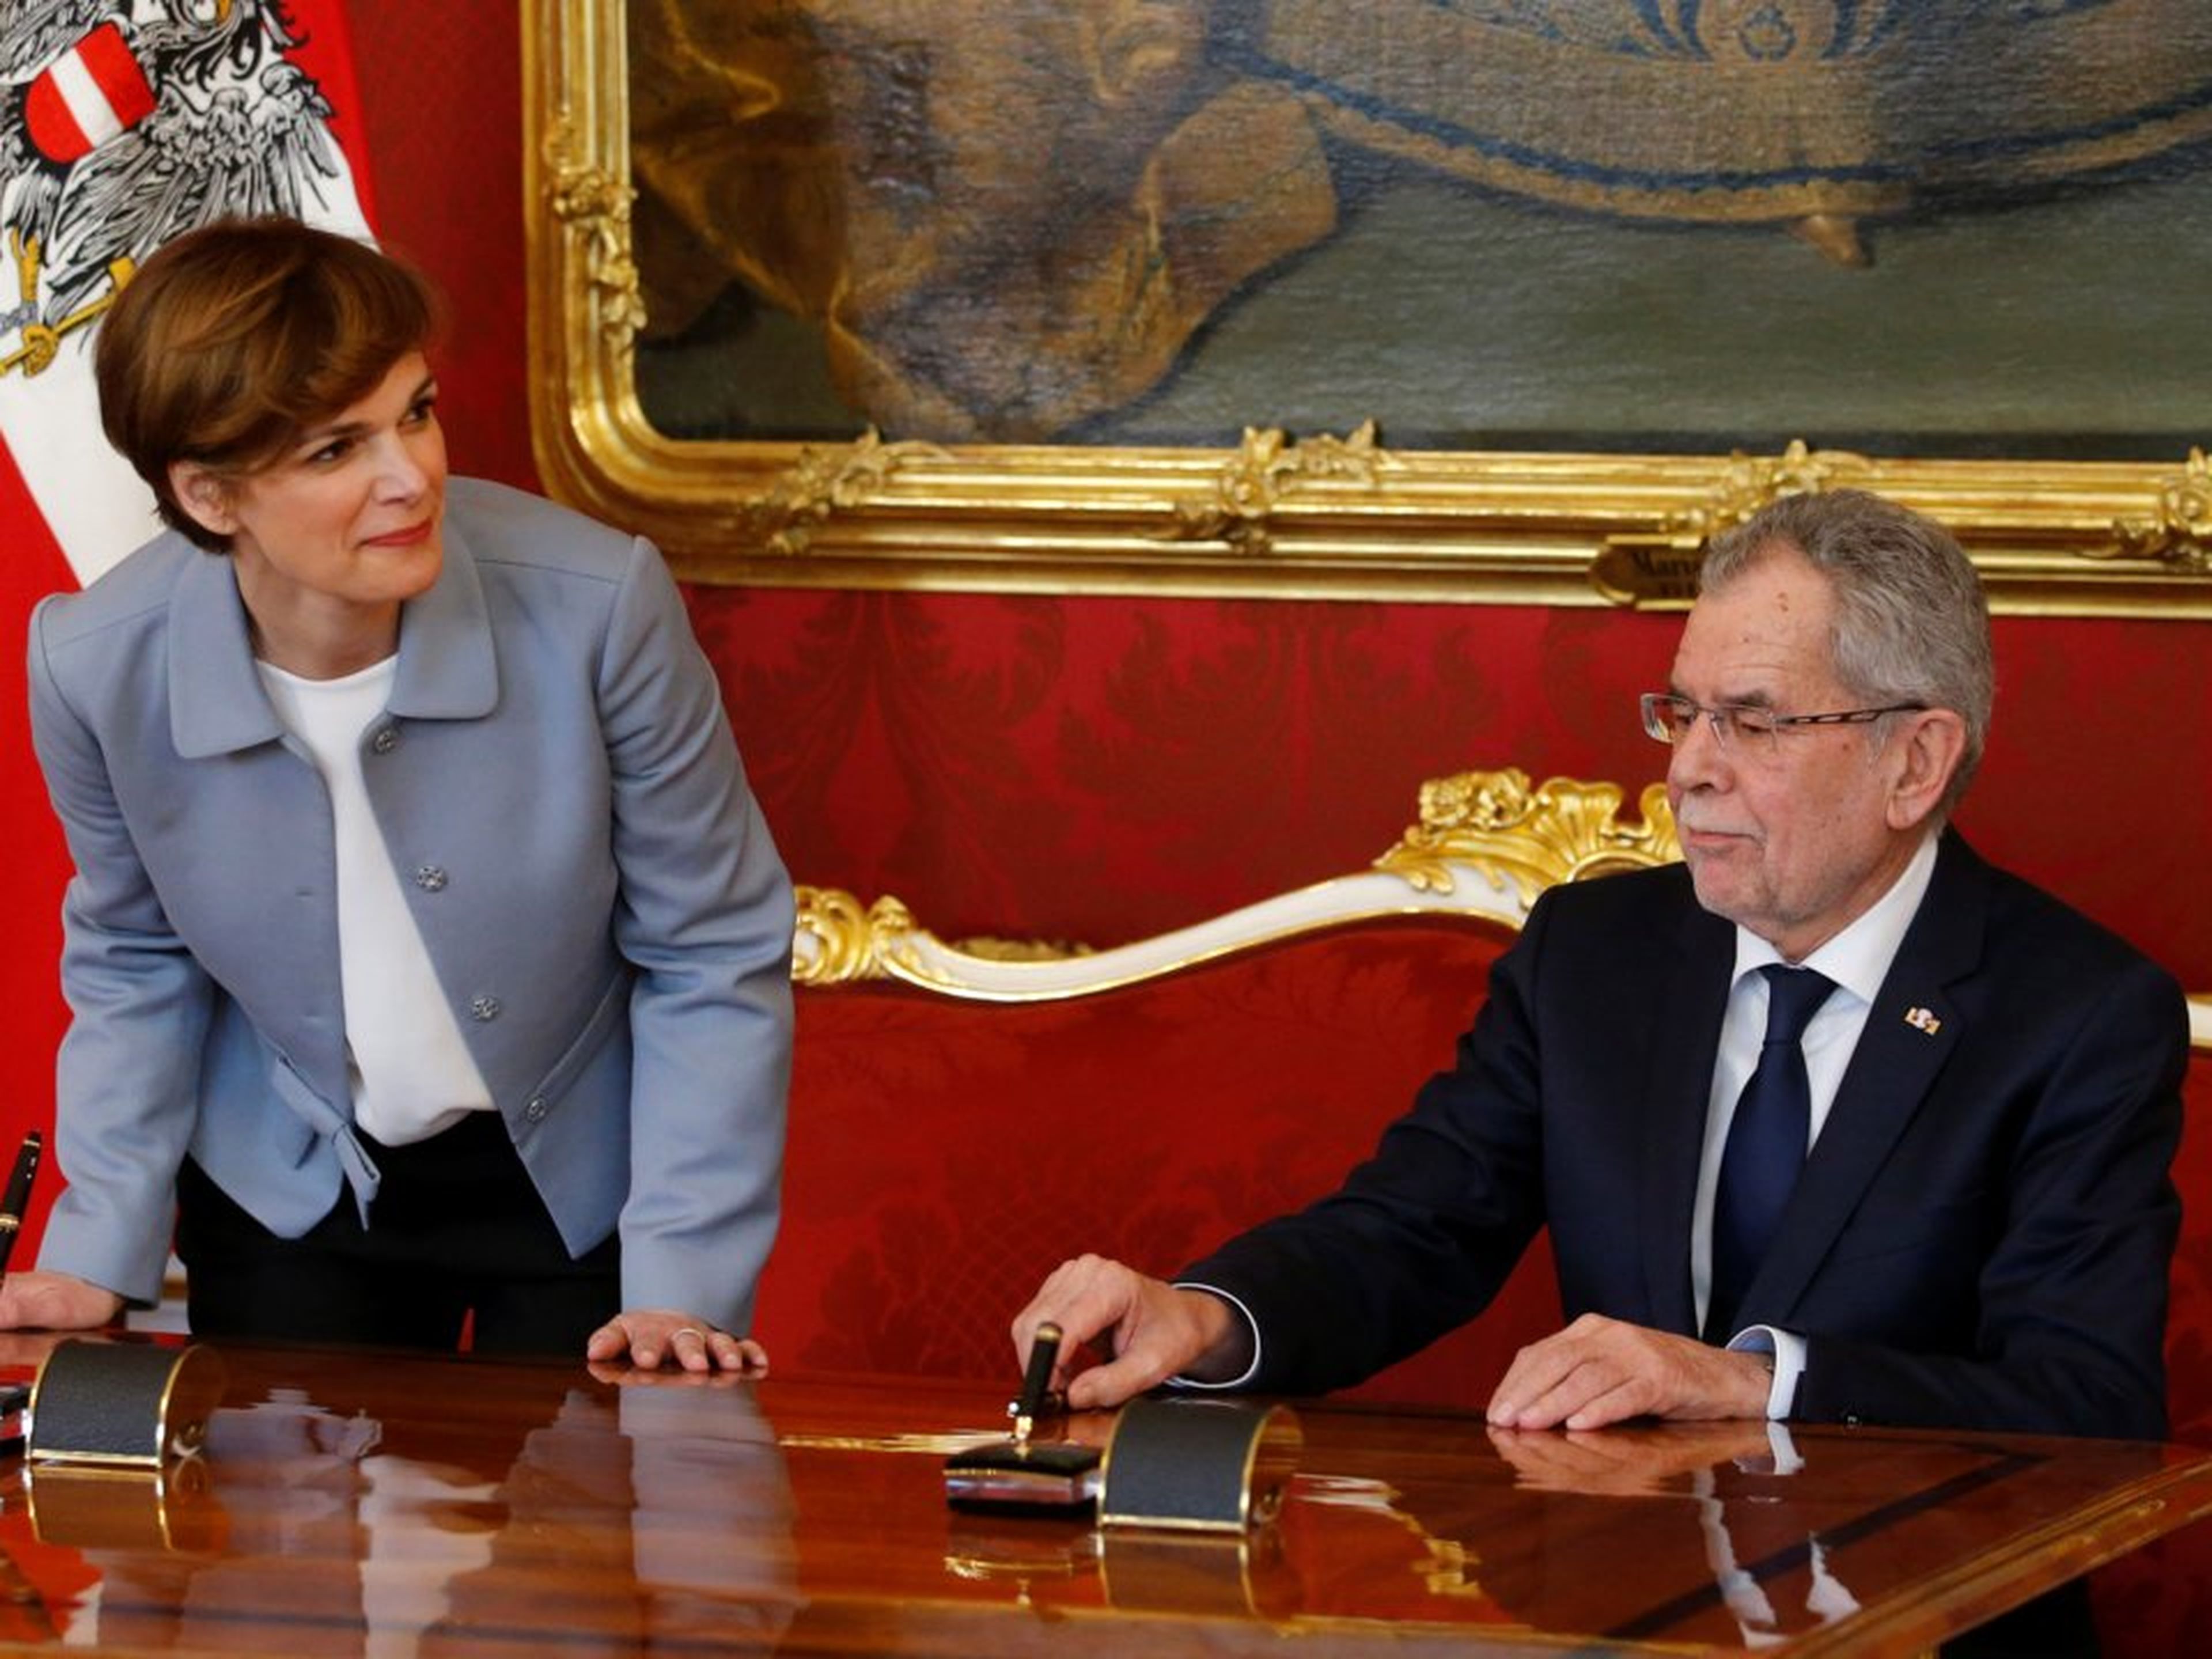 El presidente austriaco Alexander Van der Bellen toma juramento a la ministra de Sanidad, Pamela Rendi-Wagner, en marzo de 2017.